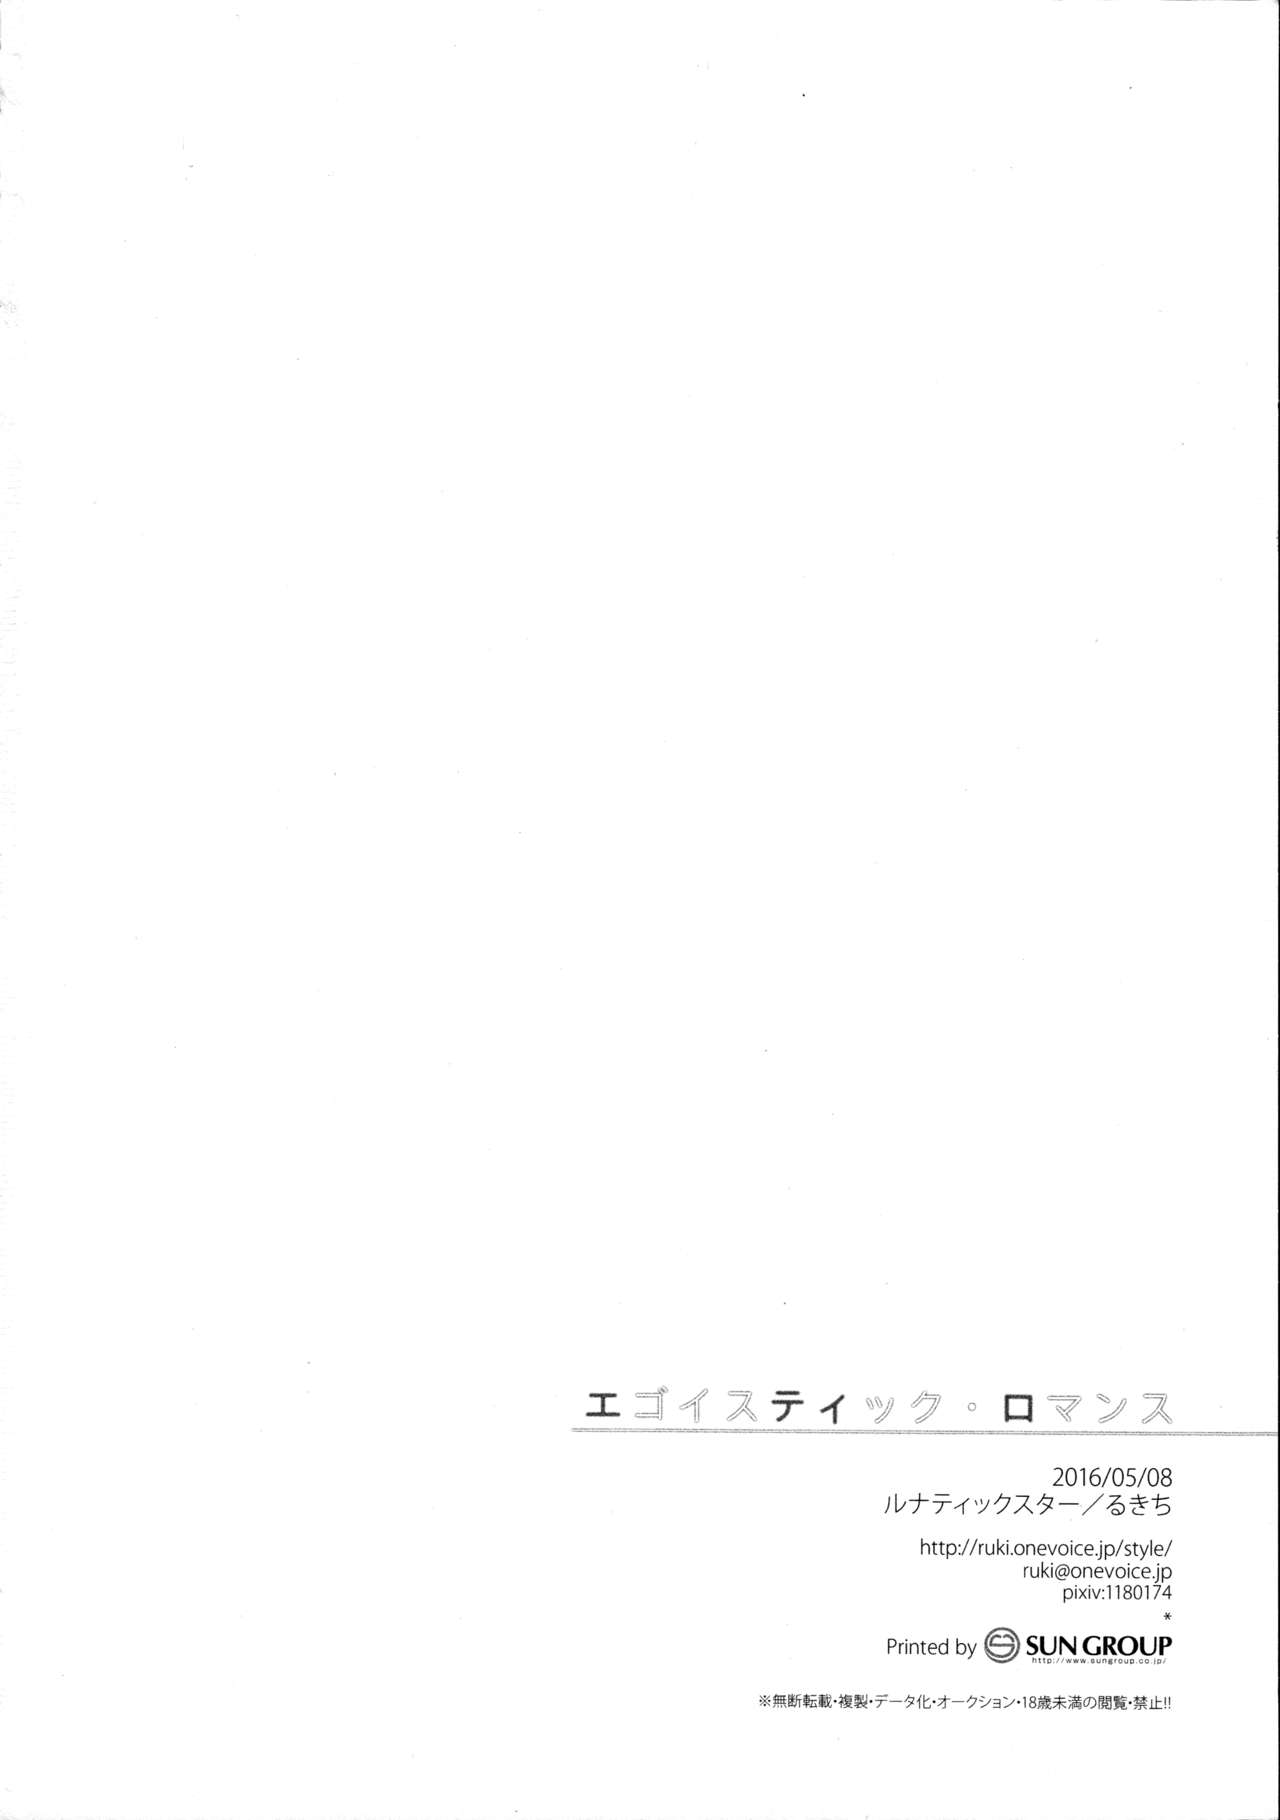 (砲雷撃戦! よーい! 二十五戦目) [ルナティックスター (るきち)] エゴイスティック・ロマンス (艦隊これくしょん -艦これ-)